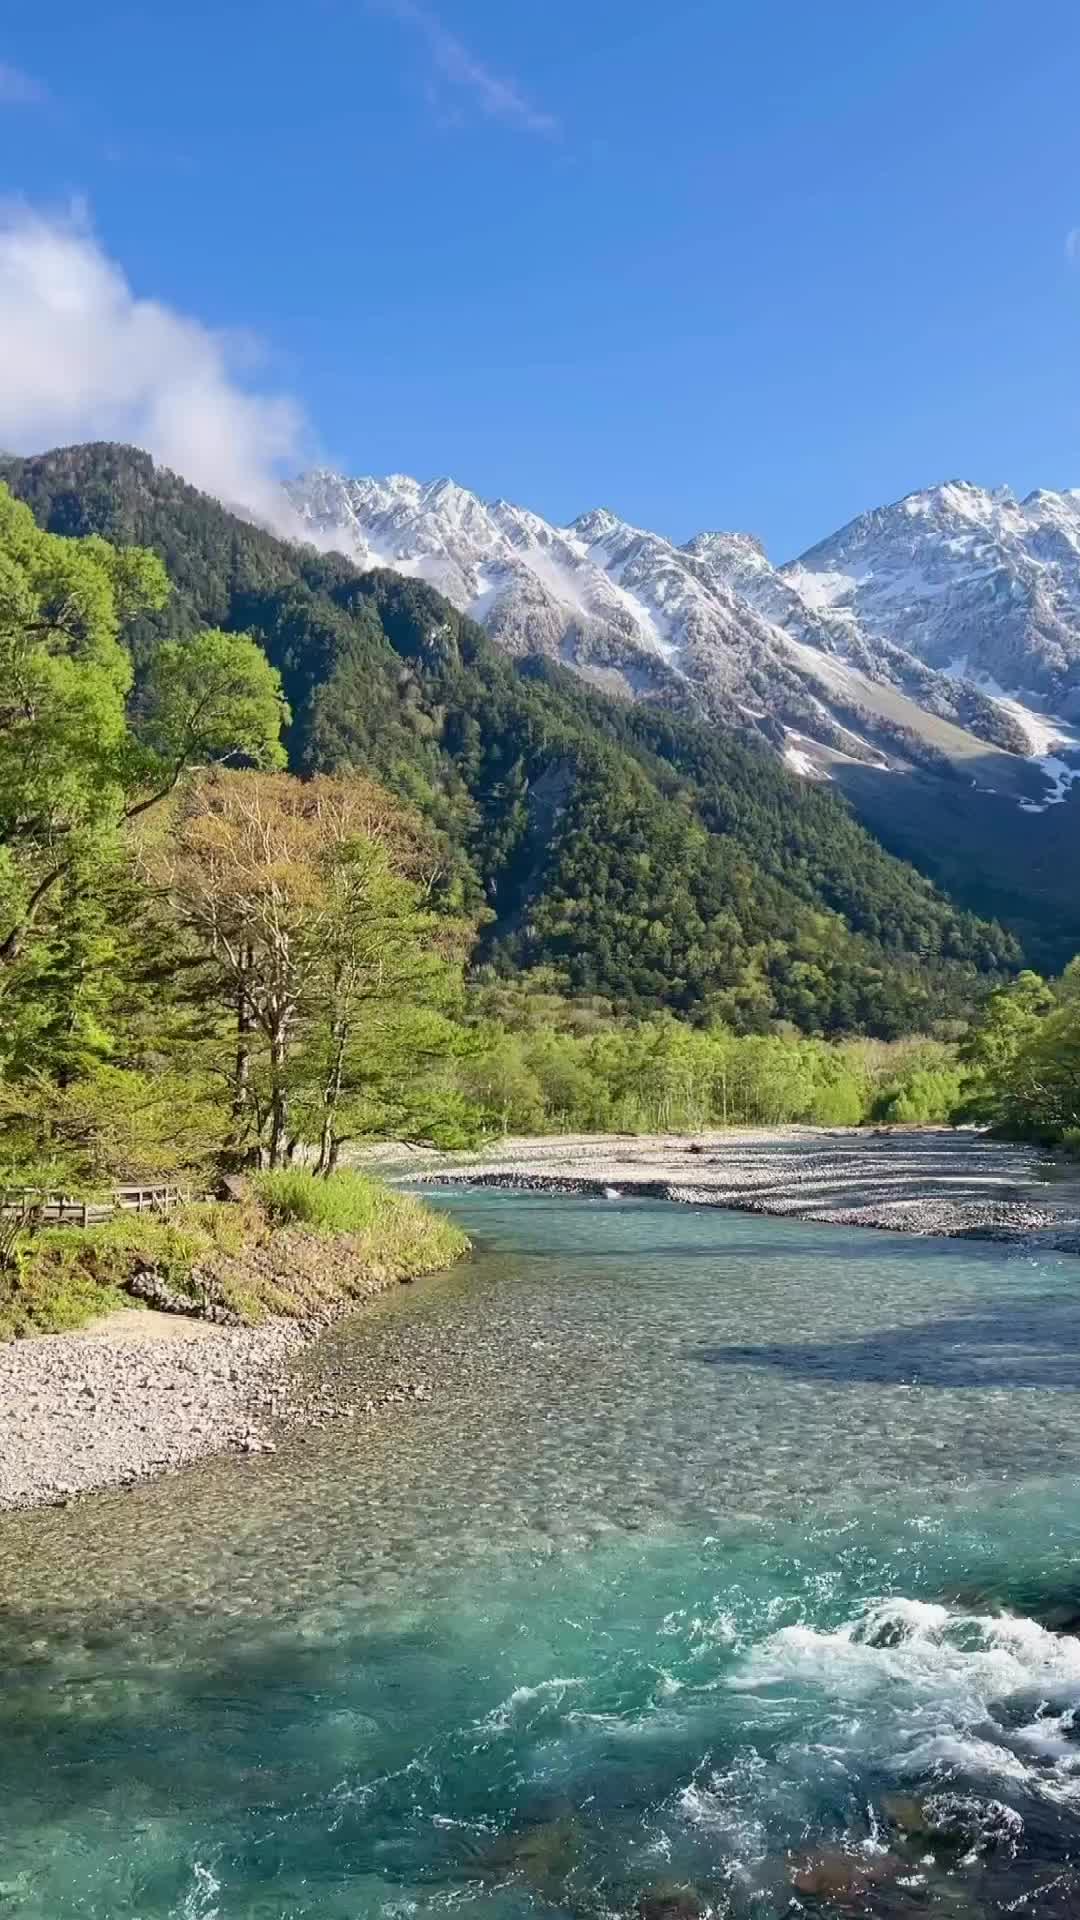 Daylight at Kamikochi: Japan Alps Beauty in Nagano